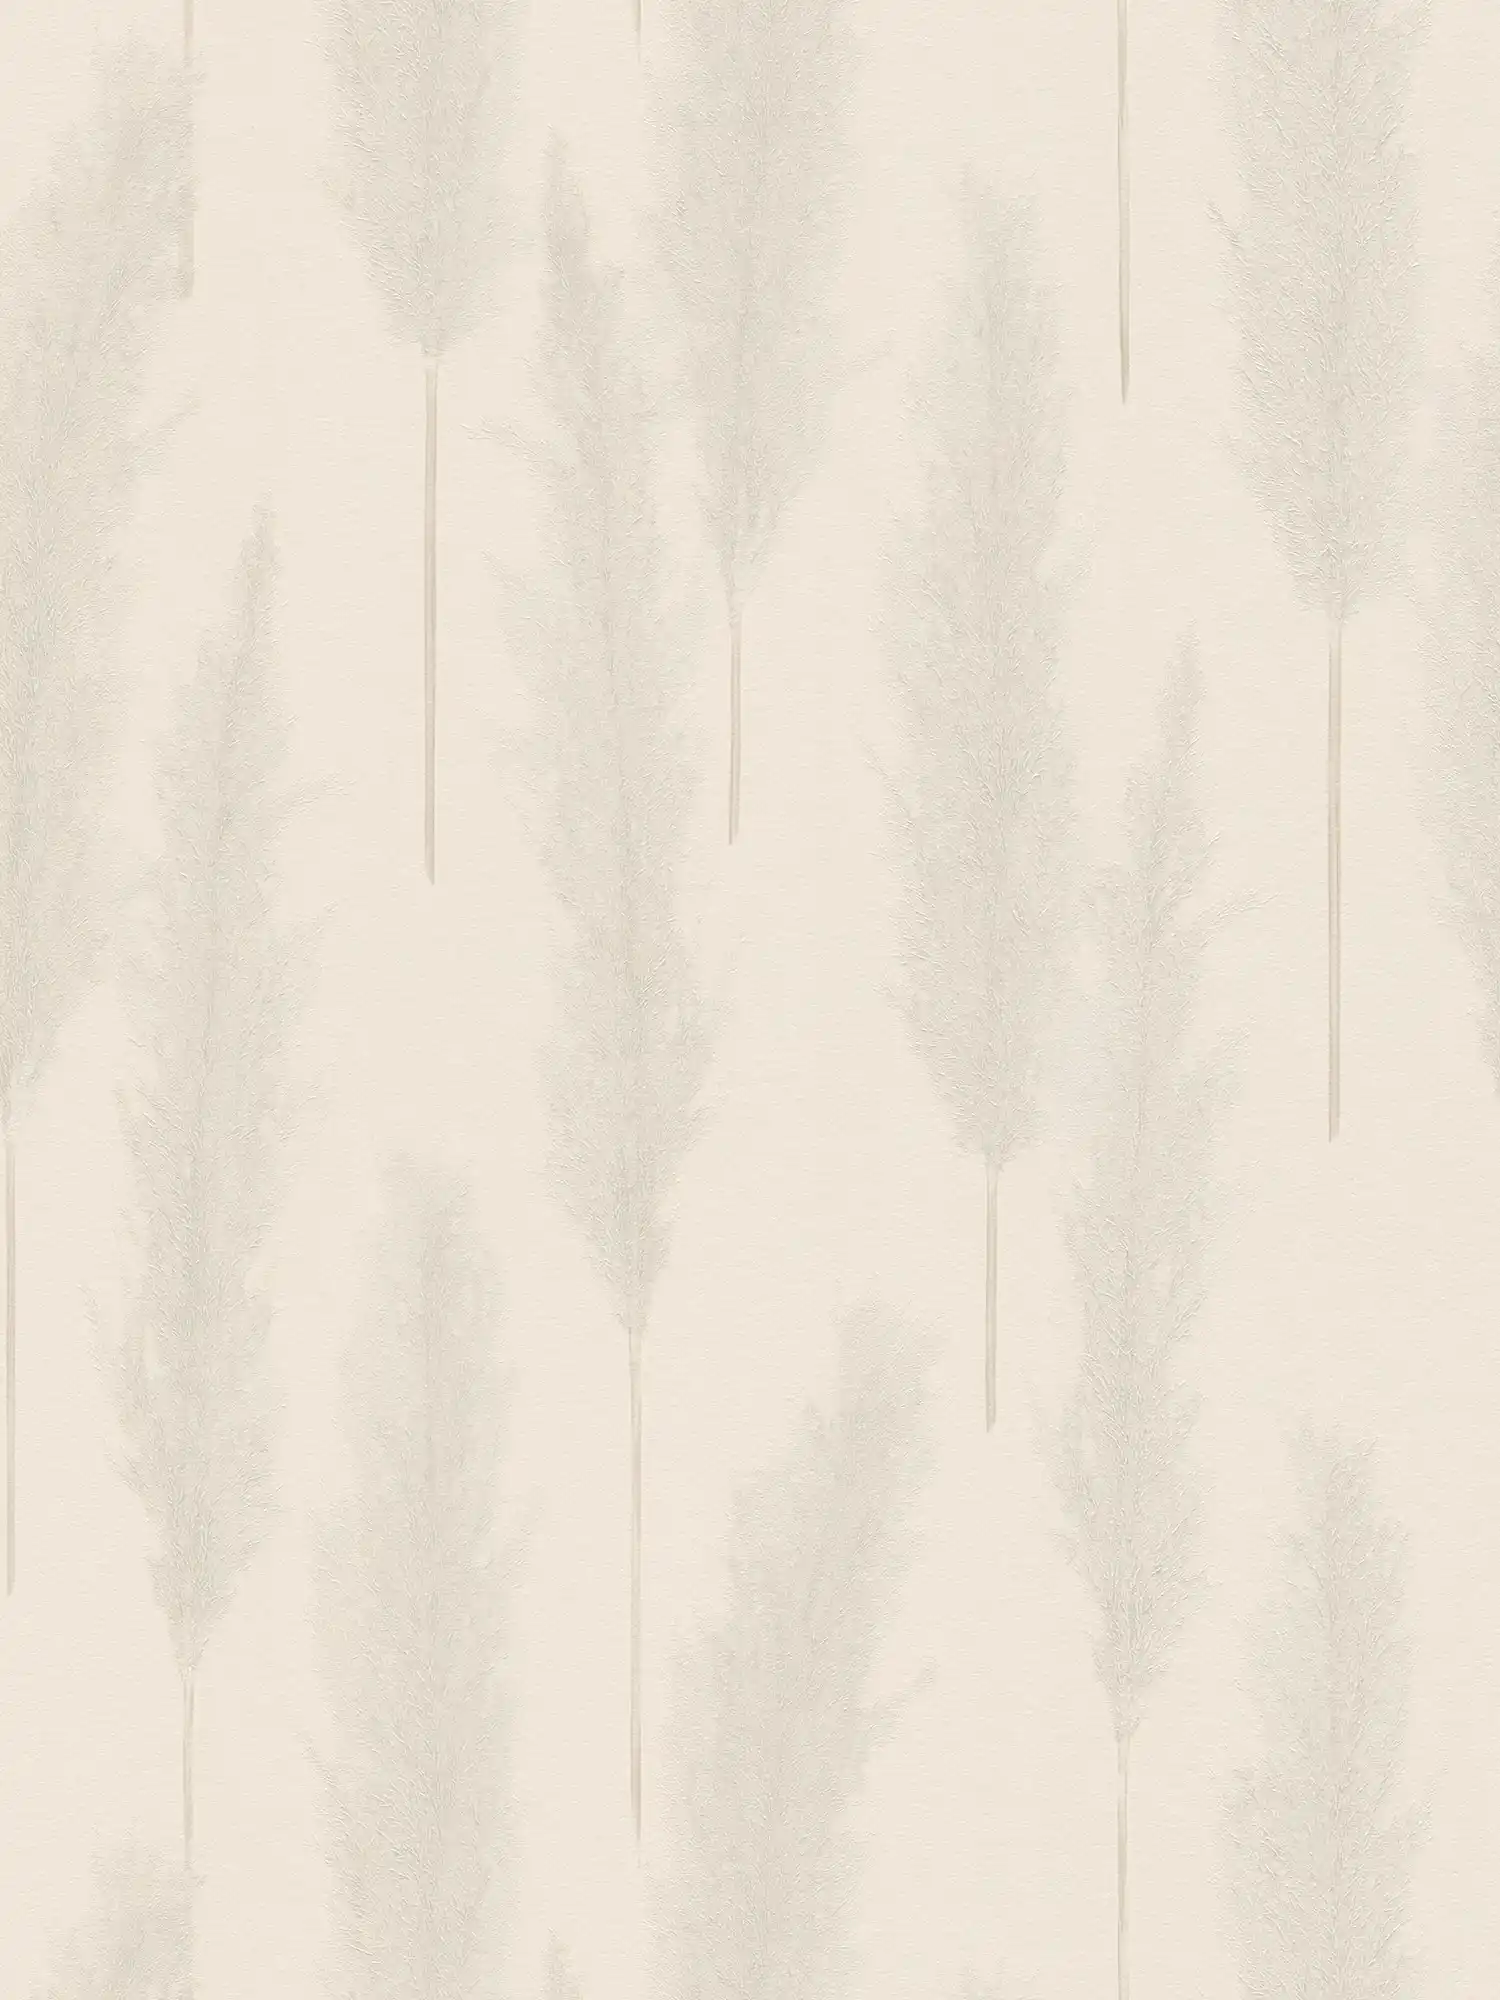 Pampas gras patroon behang - beige, grijs, wit
